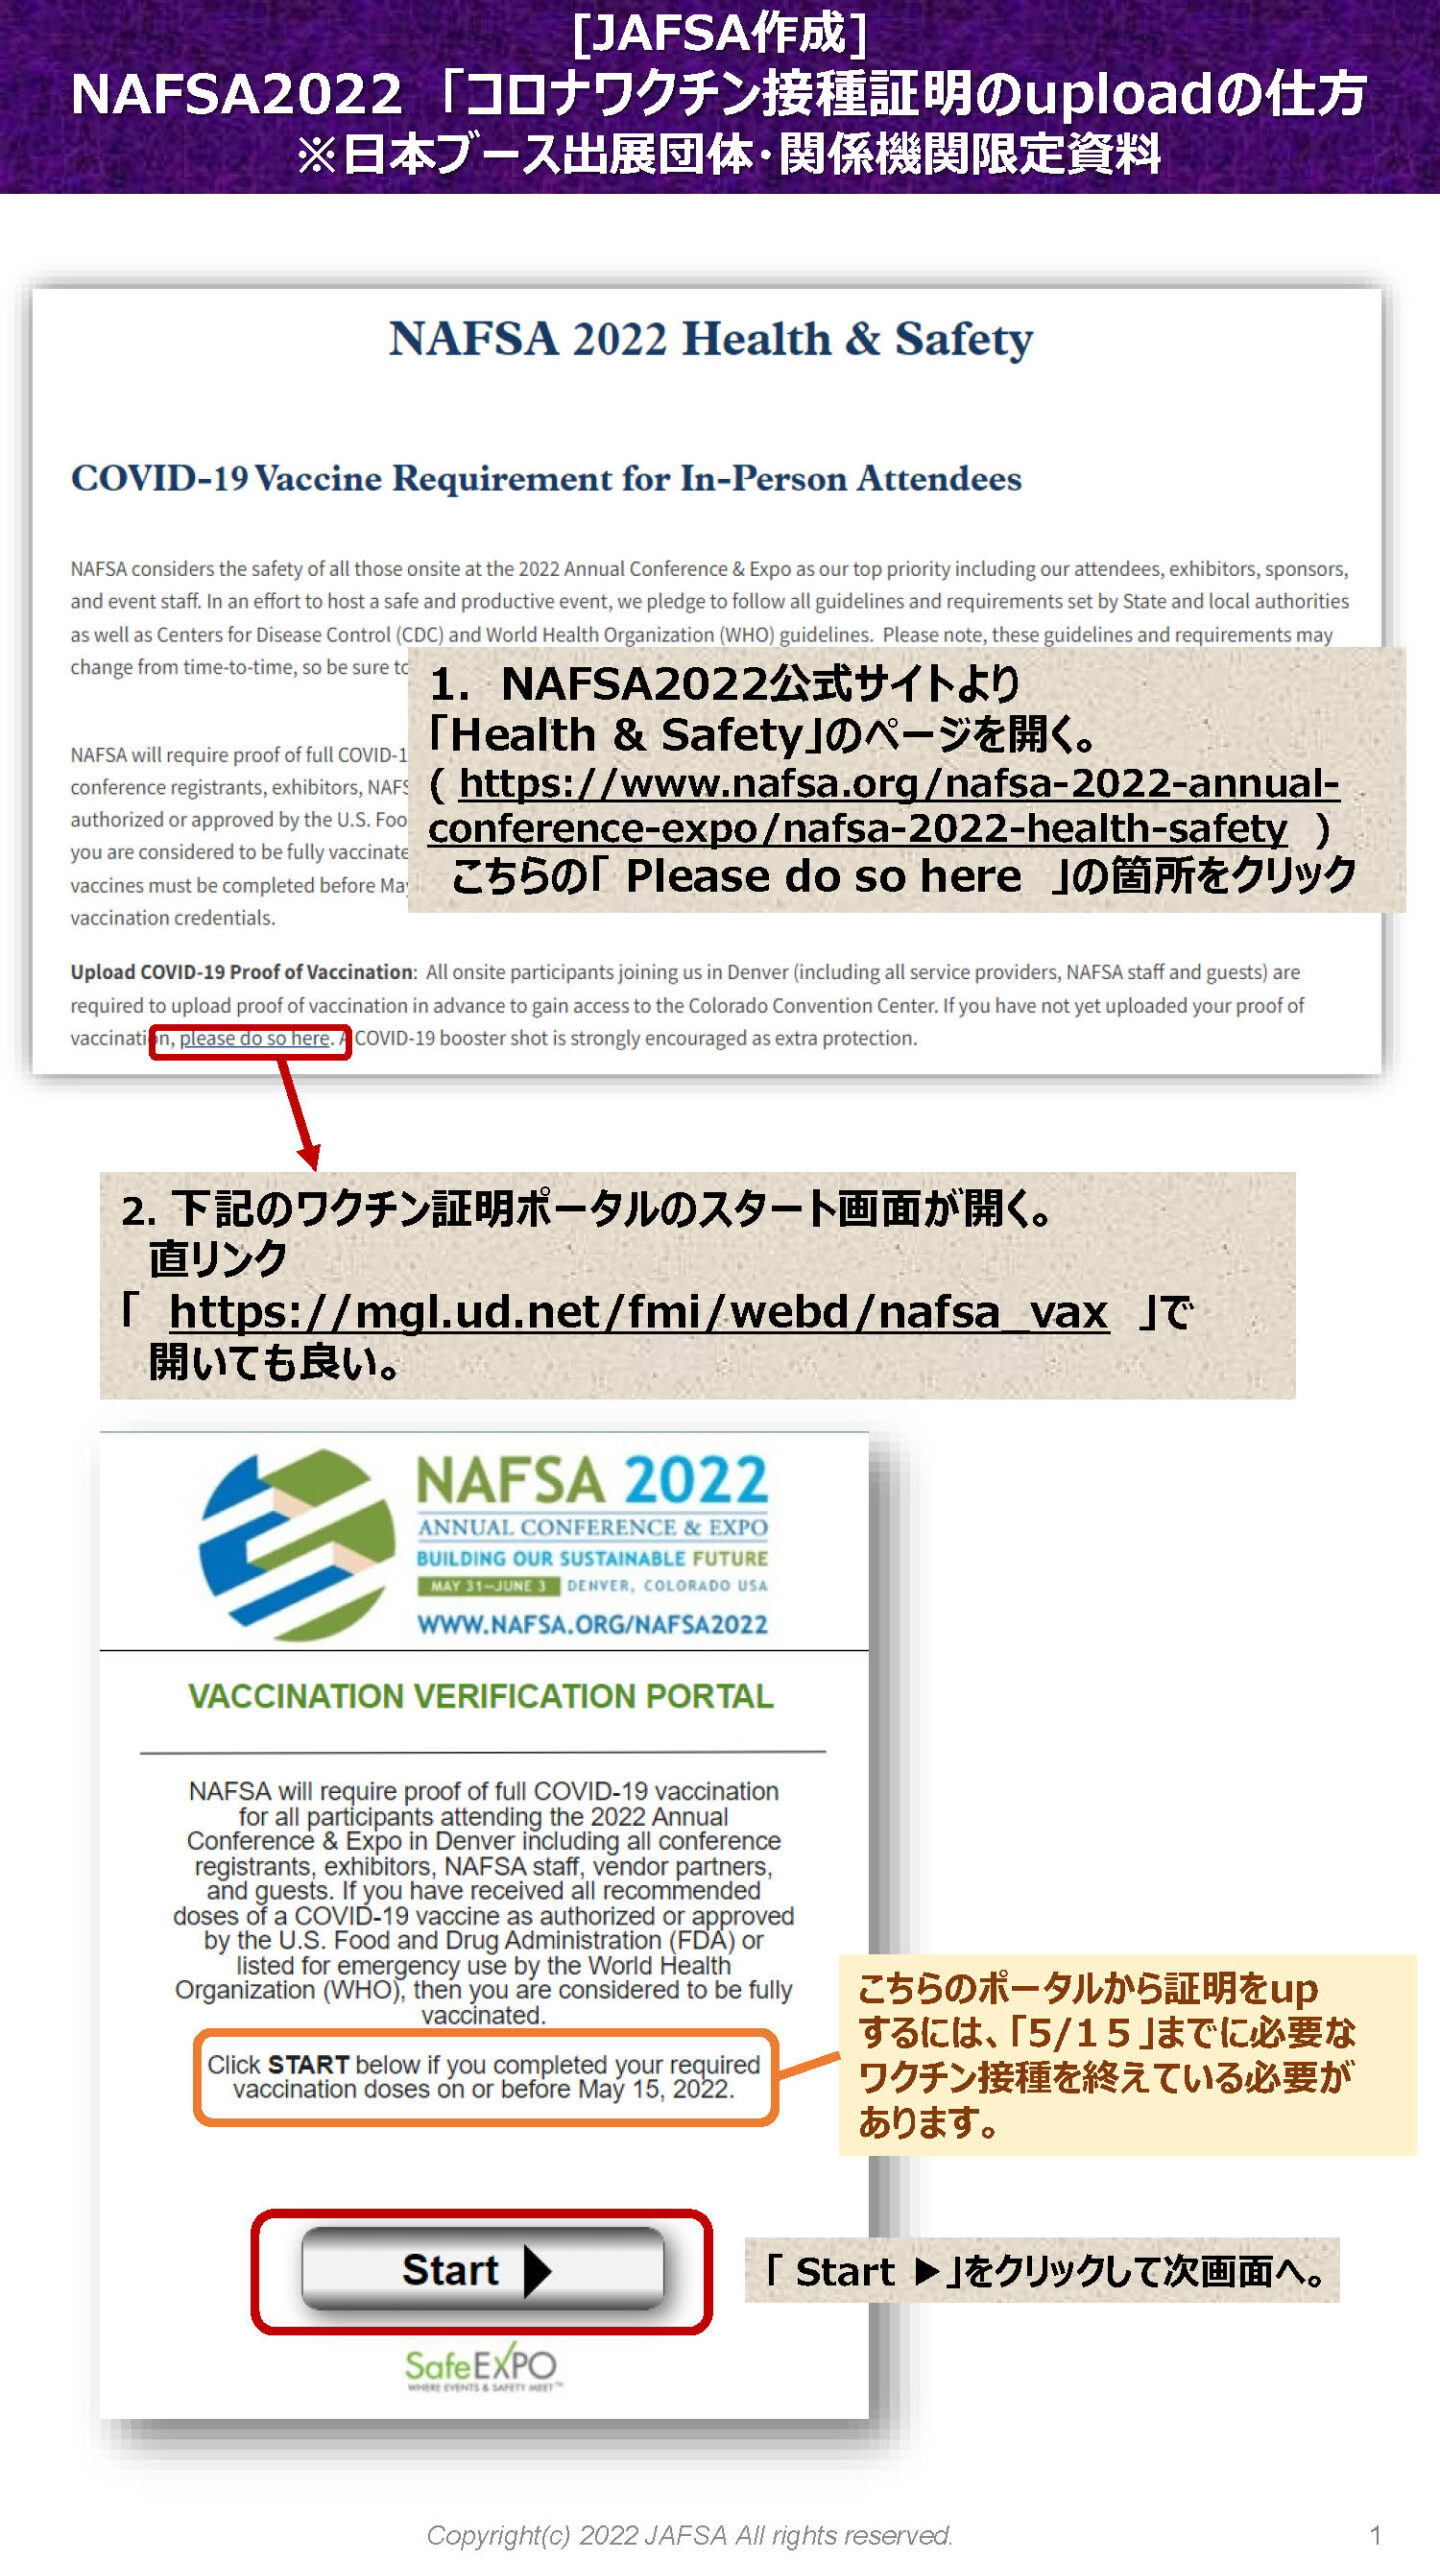 コロナワクチン接種証明のuploadの仕方 P1 (NAFSA2022)